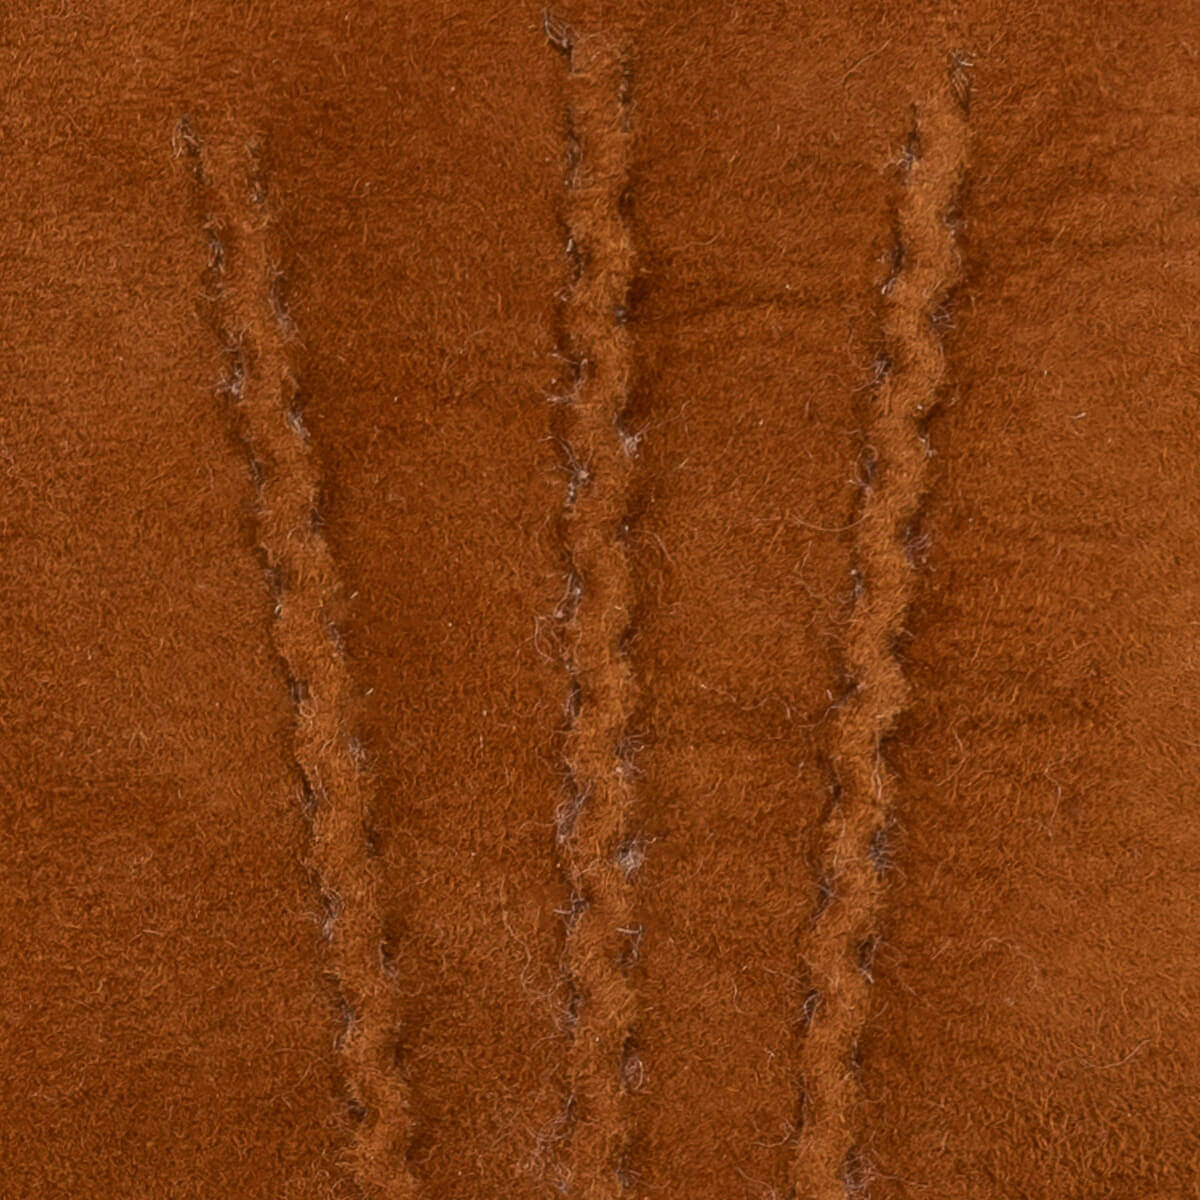 Gants en daim pour femmes marron - doublure chaude - Gants en cuir haut de gamme - Conçus à Amsterdam - Schwartz & von Halen® - 4